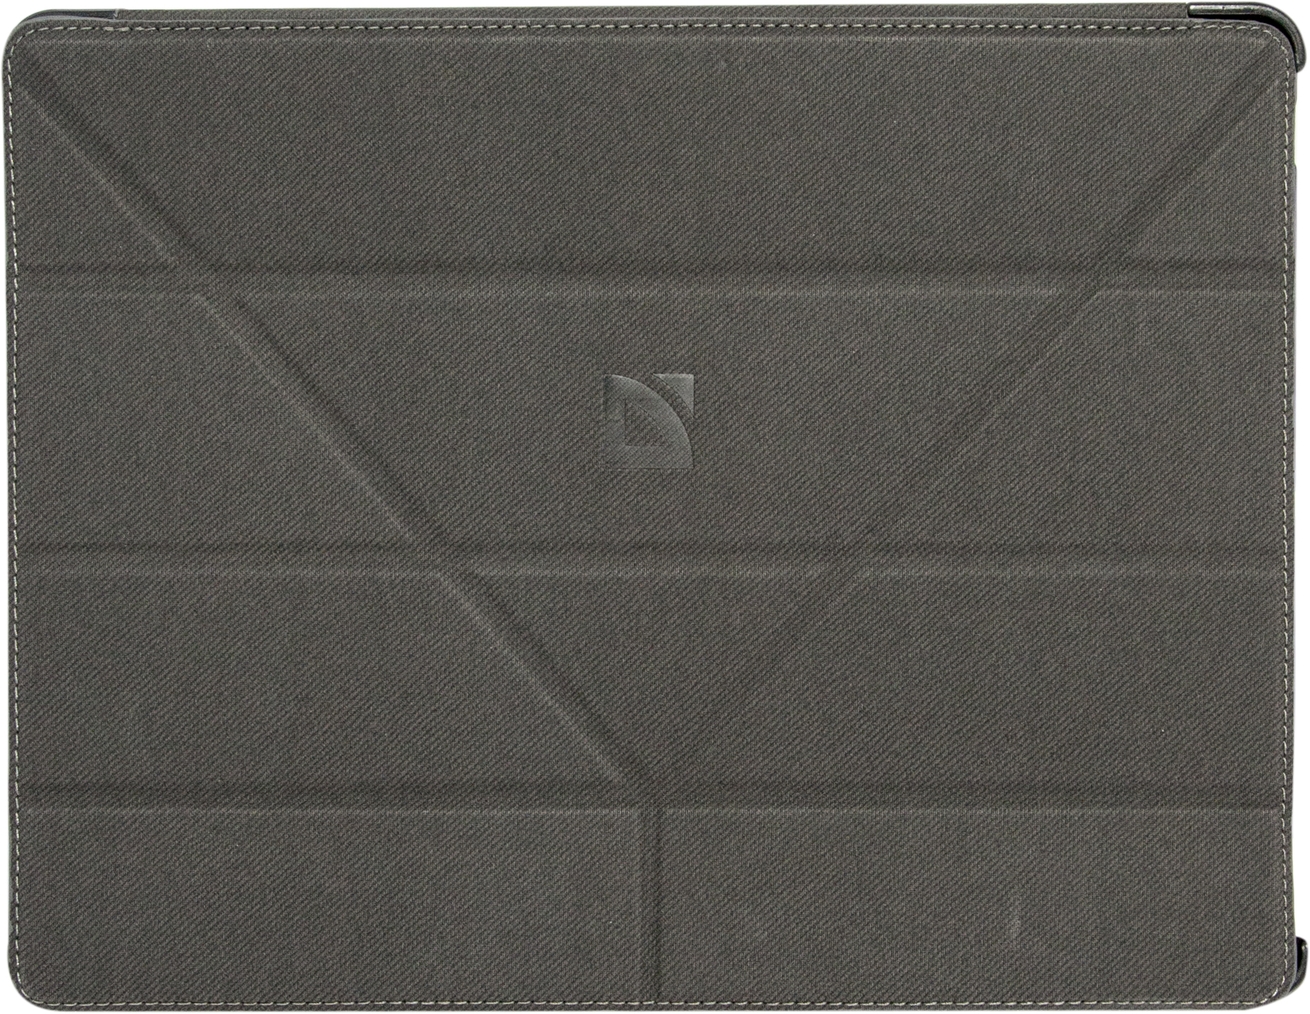 Чехол для планшета Defender Smart Case 9.7'' серый, для iPad 2/3/4